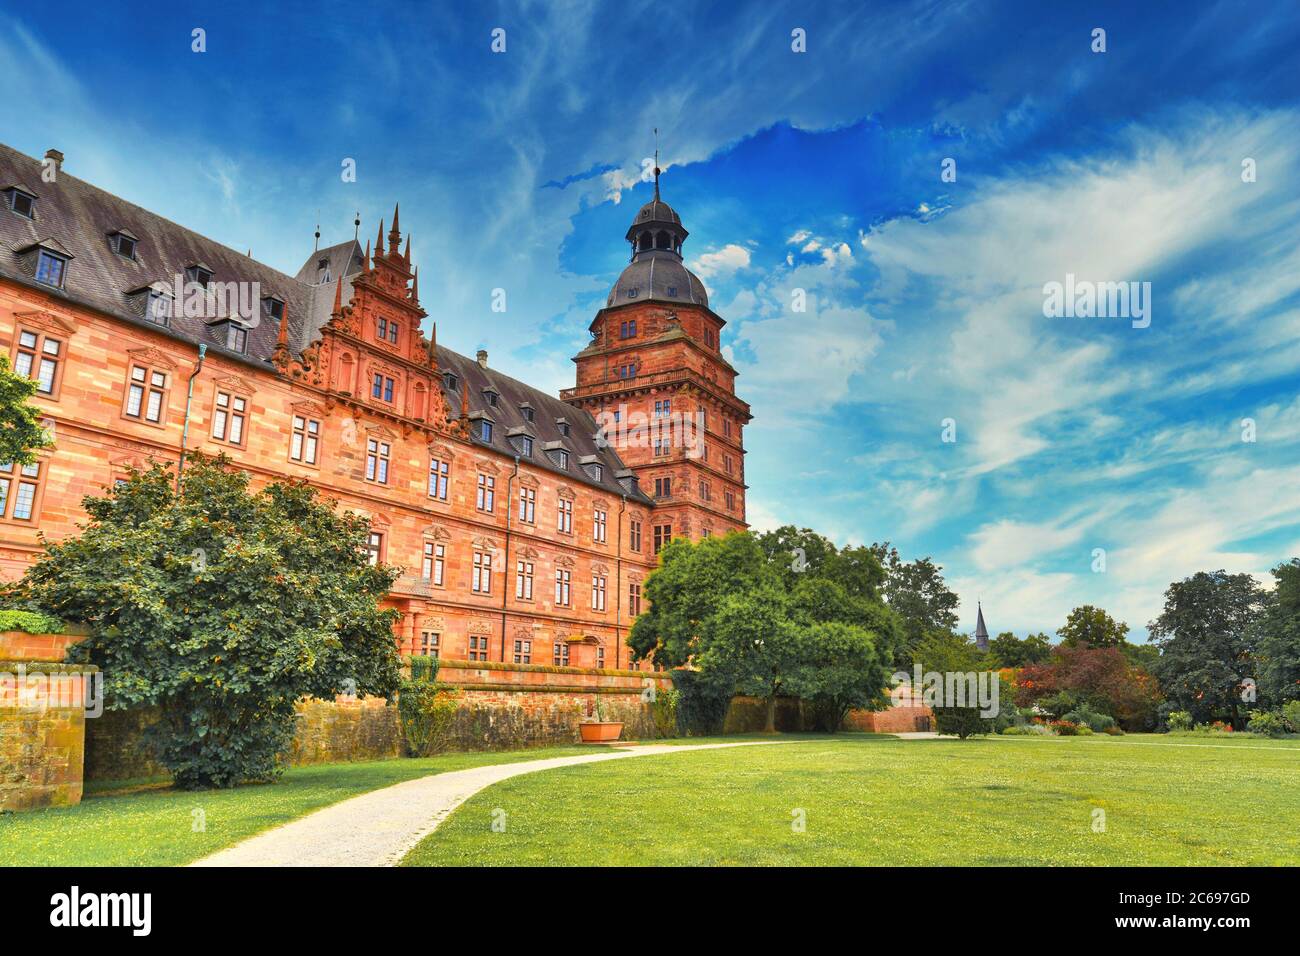 Aschaffenburg, Allemagne - juillet 2020 : le palais appelé 'Schloss Johannisburg' dans le style de la Renaissance allemande Banque D'Images